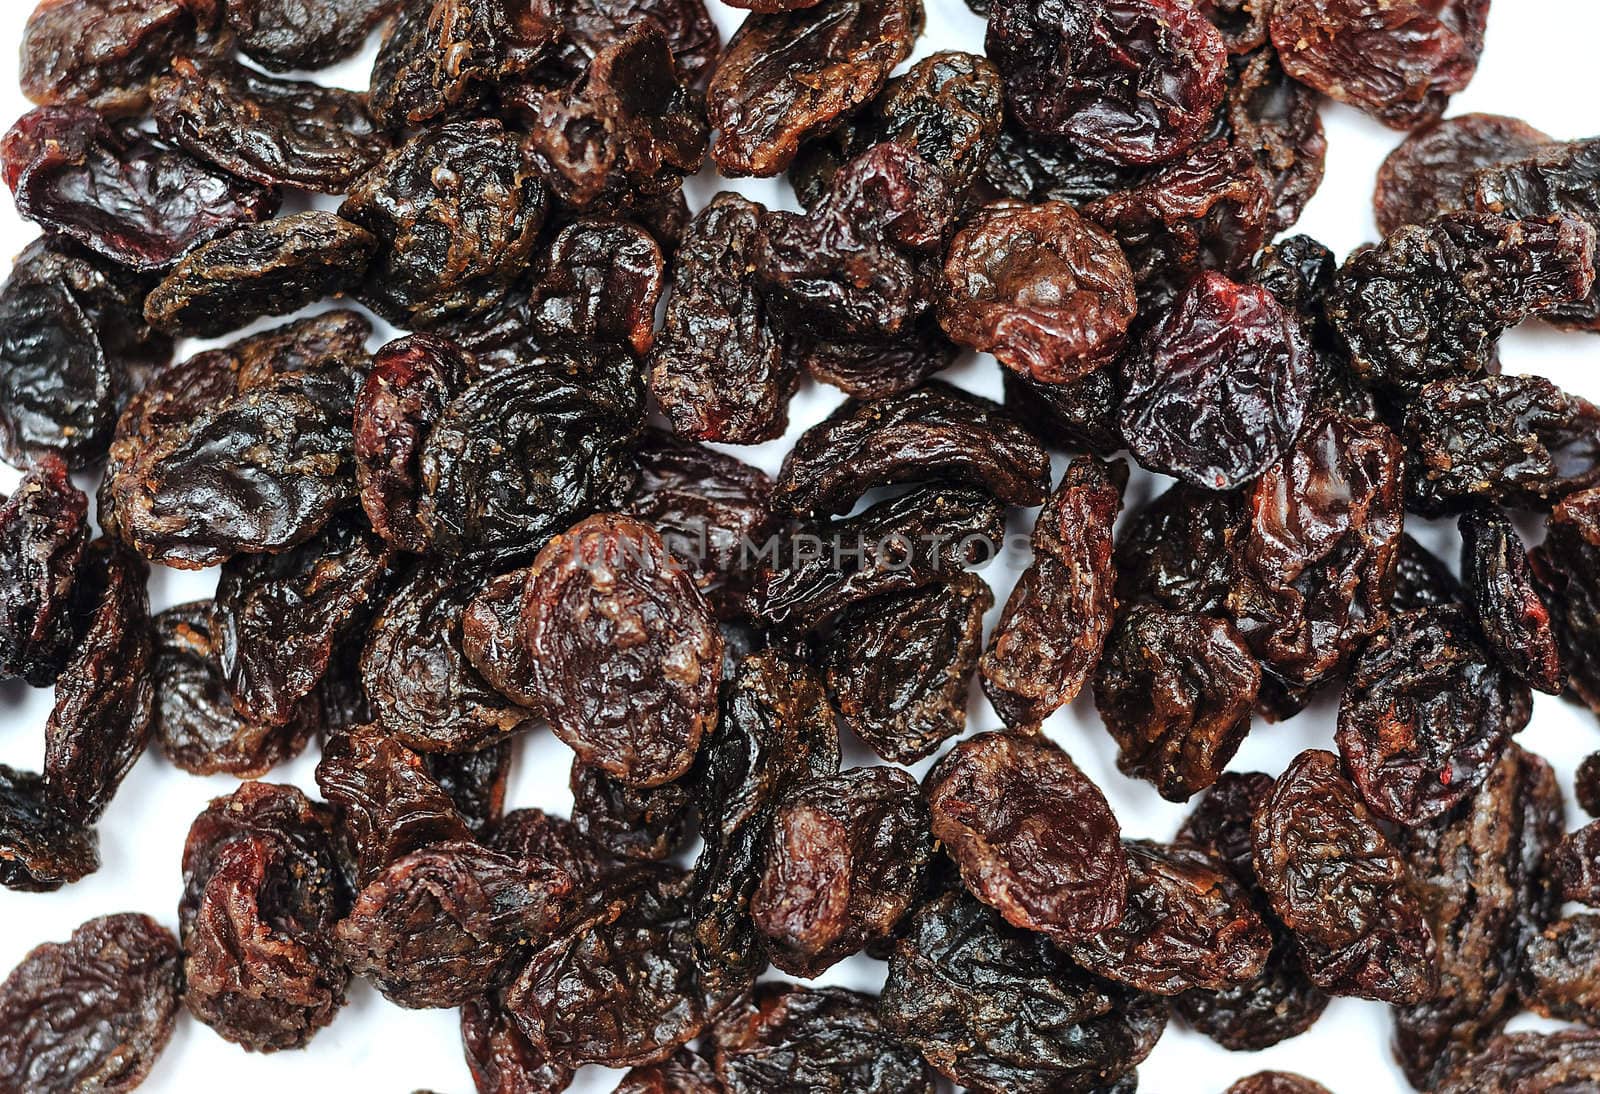 Black Jumbo raisins(very big raisins) over white background